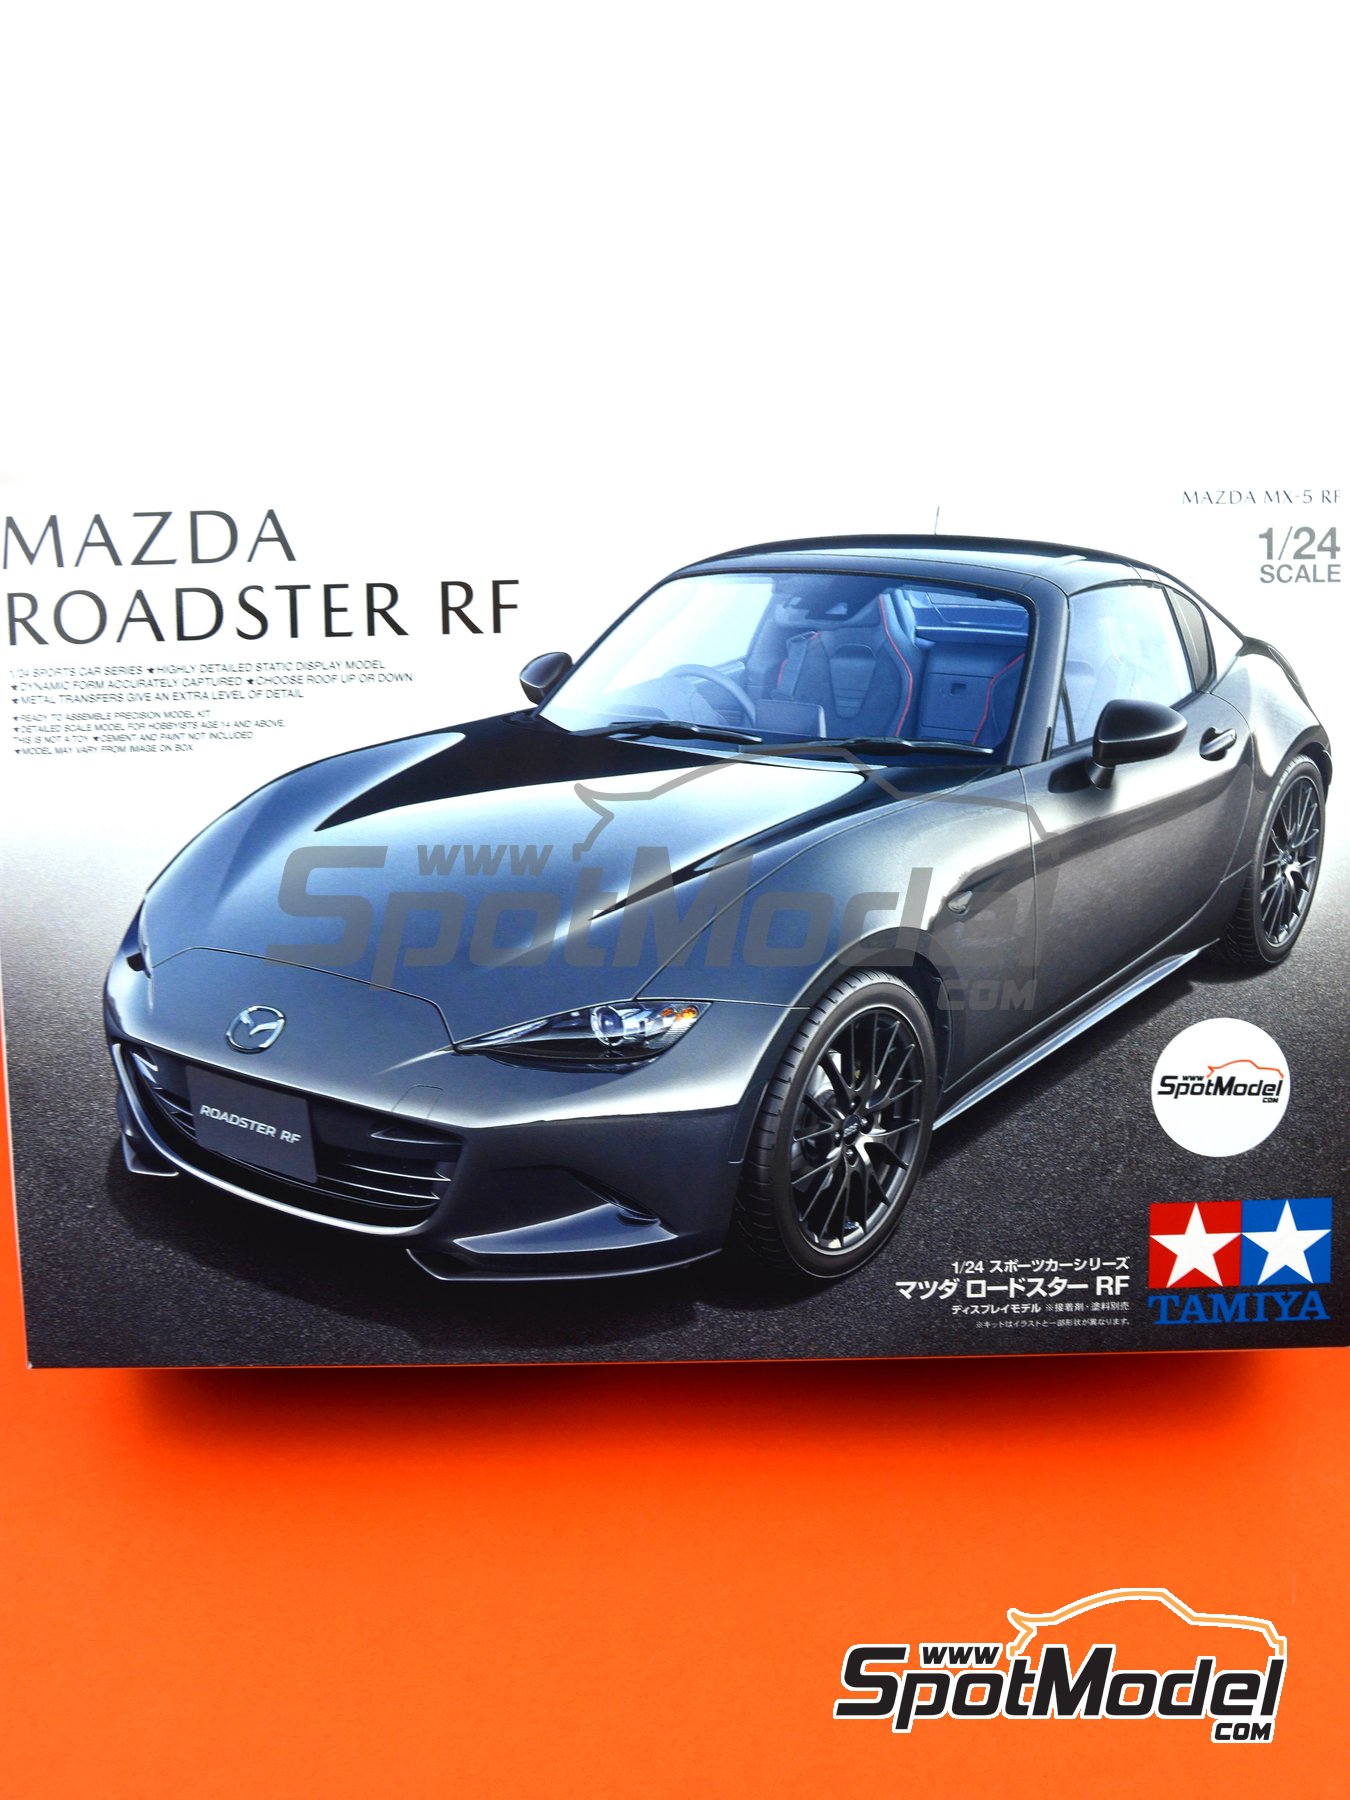 mazda mx 5 scale model cars